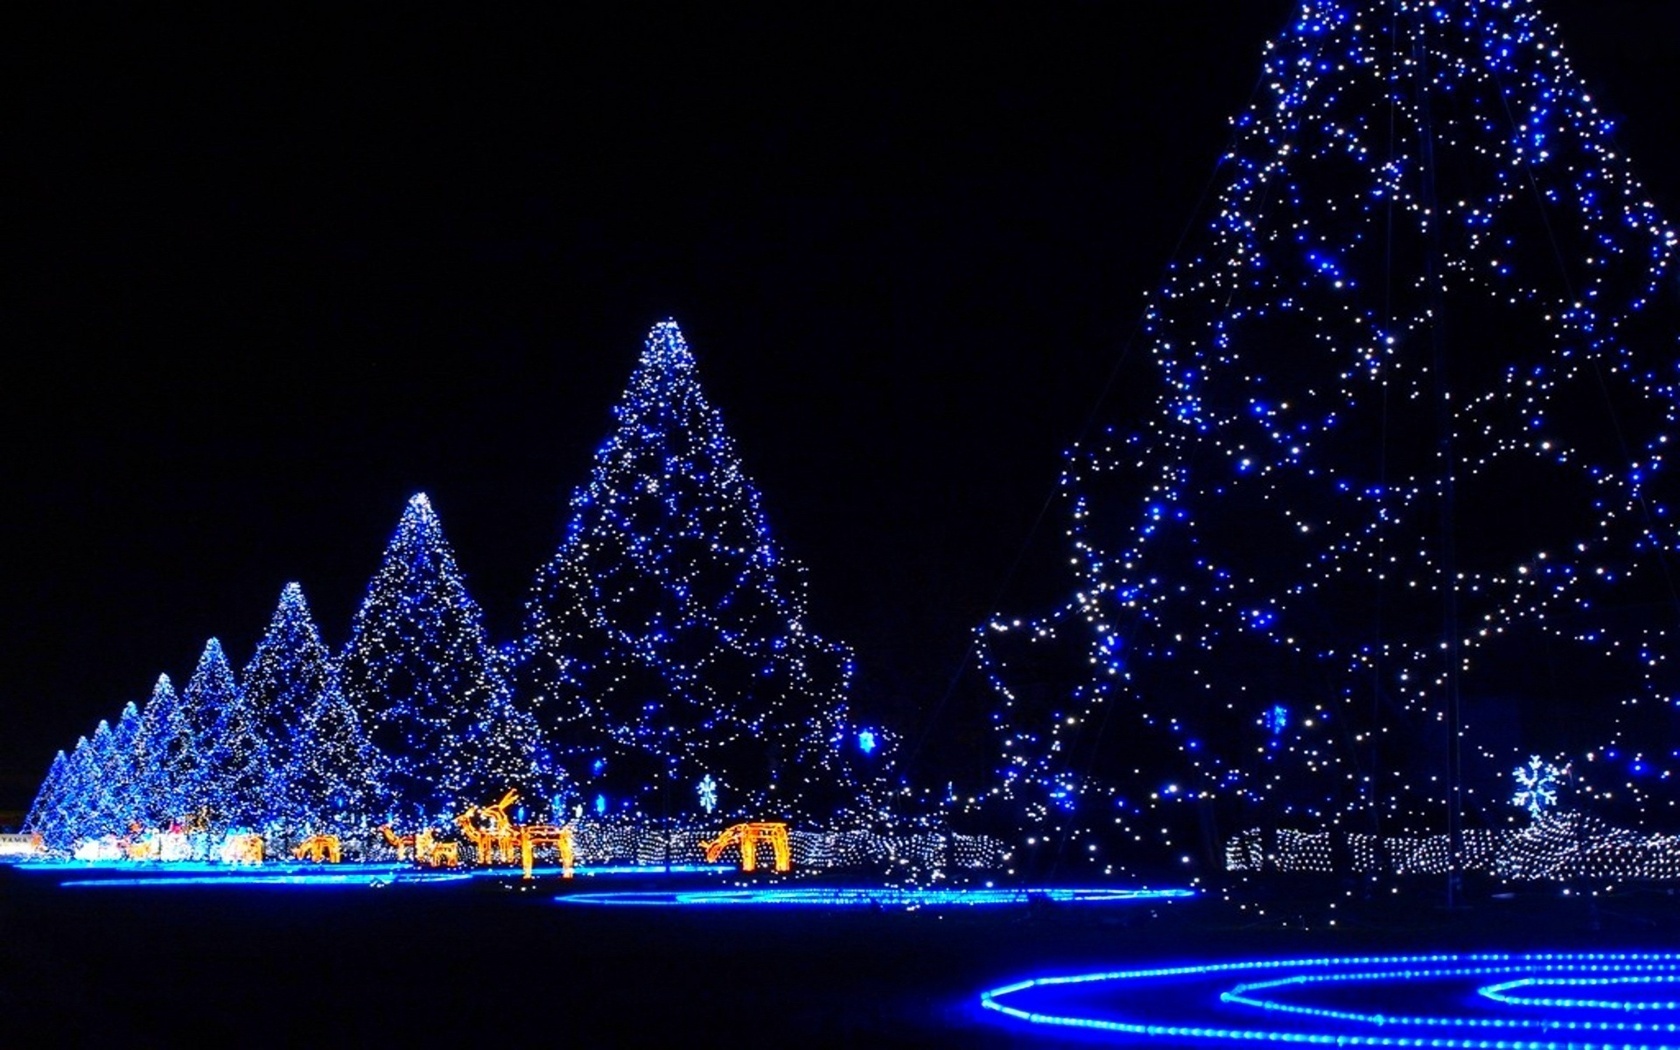 tapete weihnachten,weihnachtsdekoration,blau,weihnachtsbeleuchtung,baum,licht